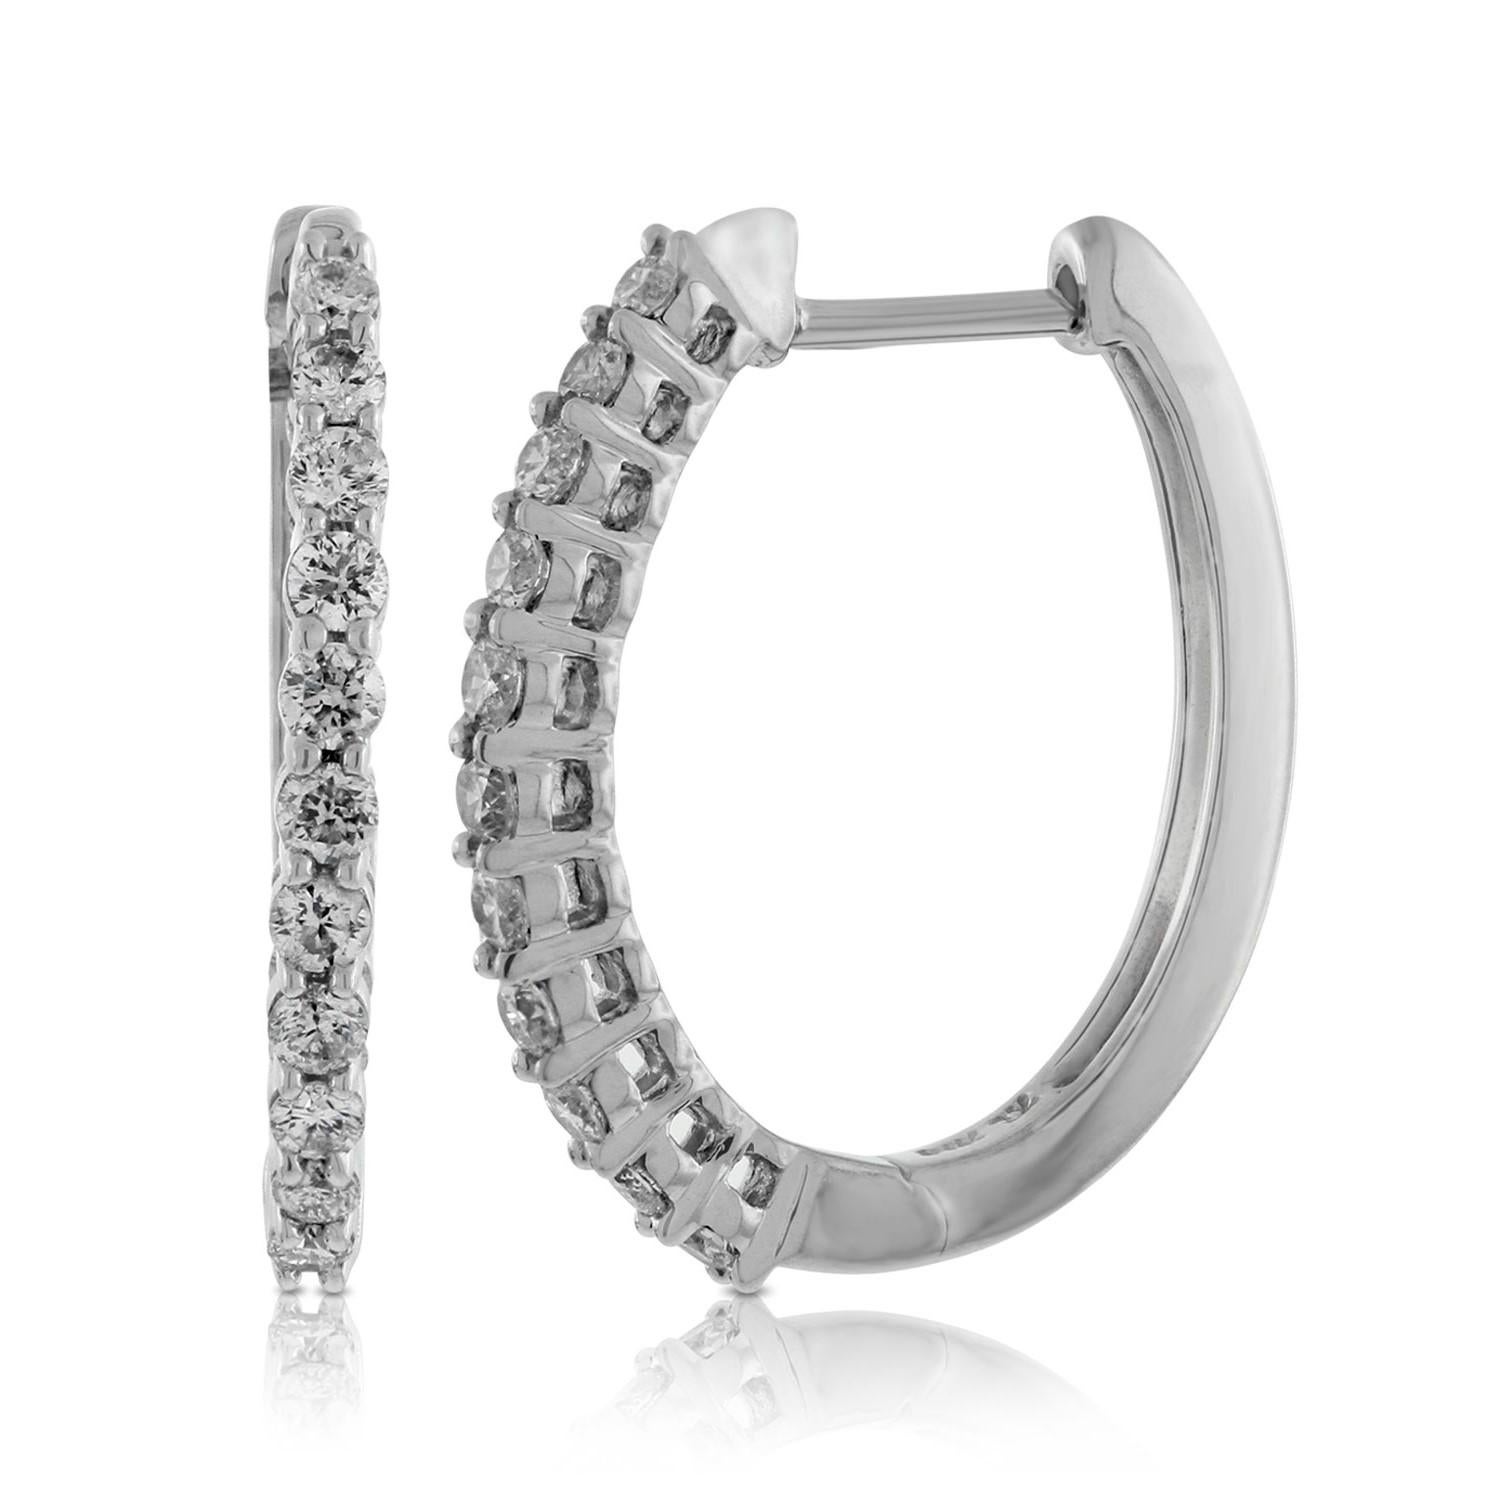 Es gibt nichts Luxuriöseres als ein unglaubliches Paar runder Diamant-Ohrringe. Diese atemberaubenden, hochglanzpolierten 14 Karat Weißgold-Ohrringe in runder Form sind mit insgesamt 26 runden Diamanten im Brillantschliff von insgesamt 1,00 Karat